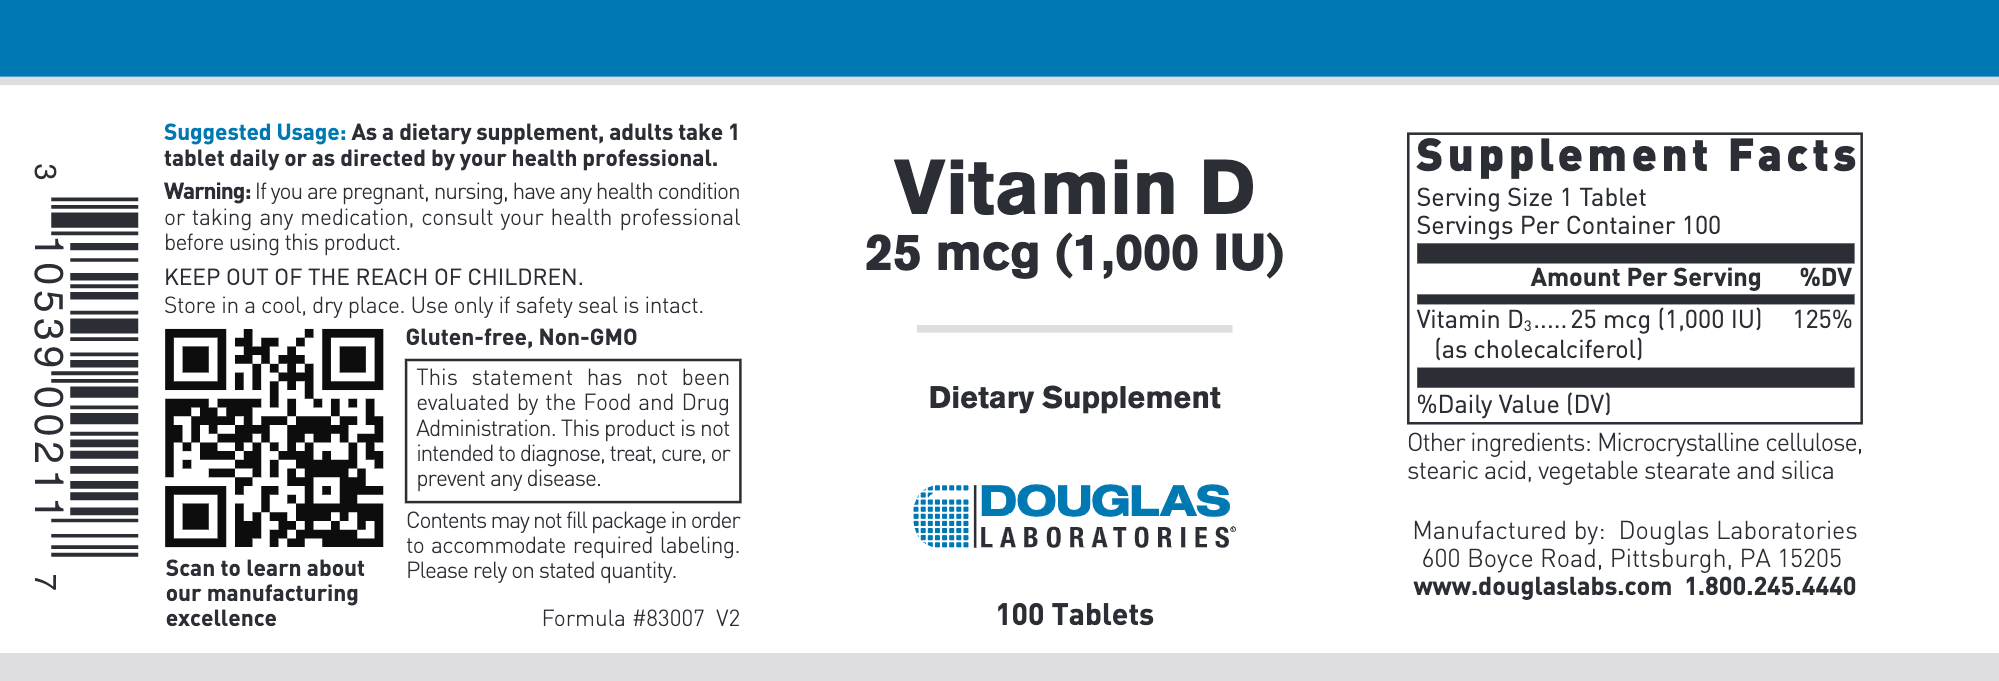 Vitamin D 1000 IU 100 tabs